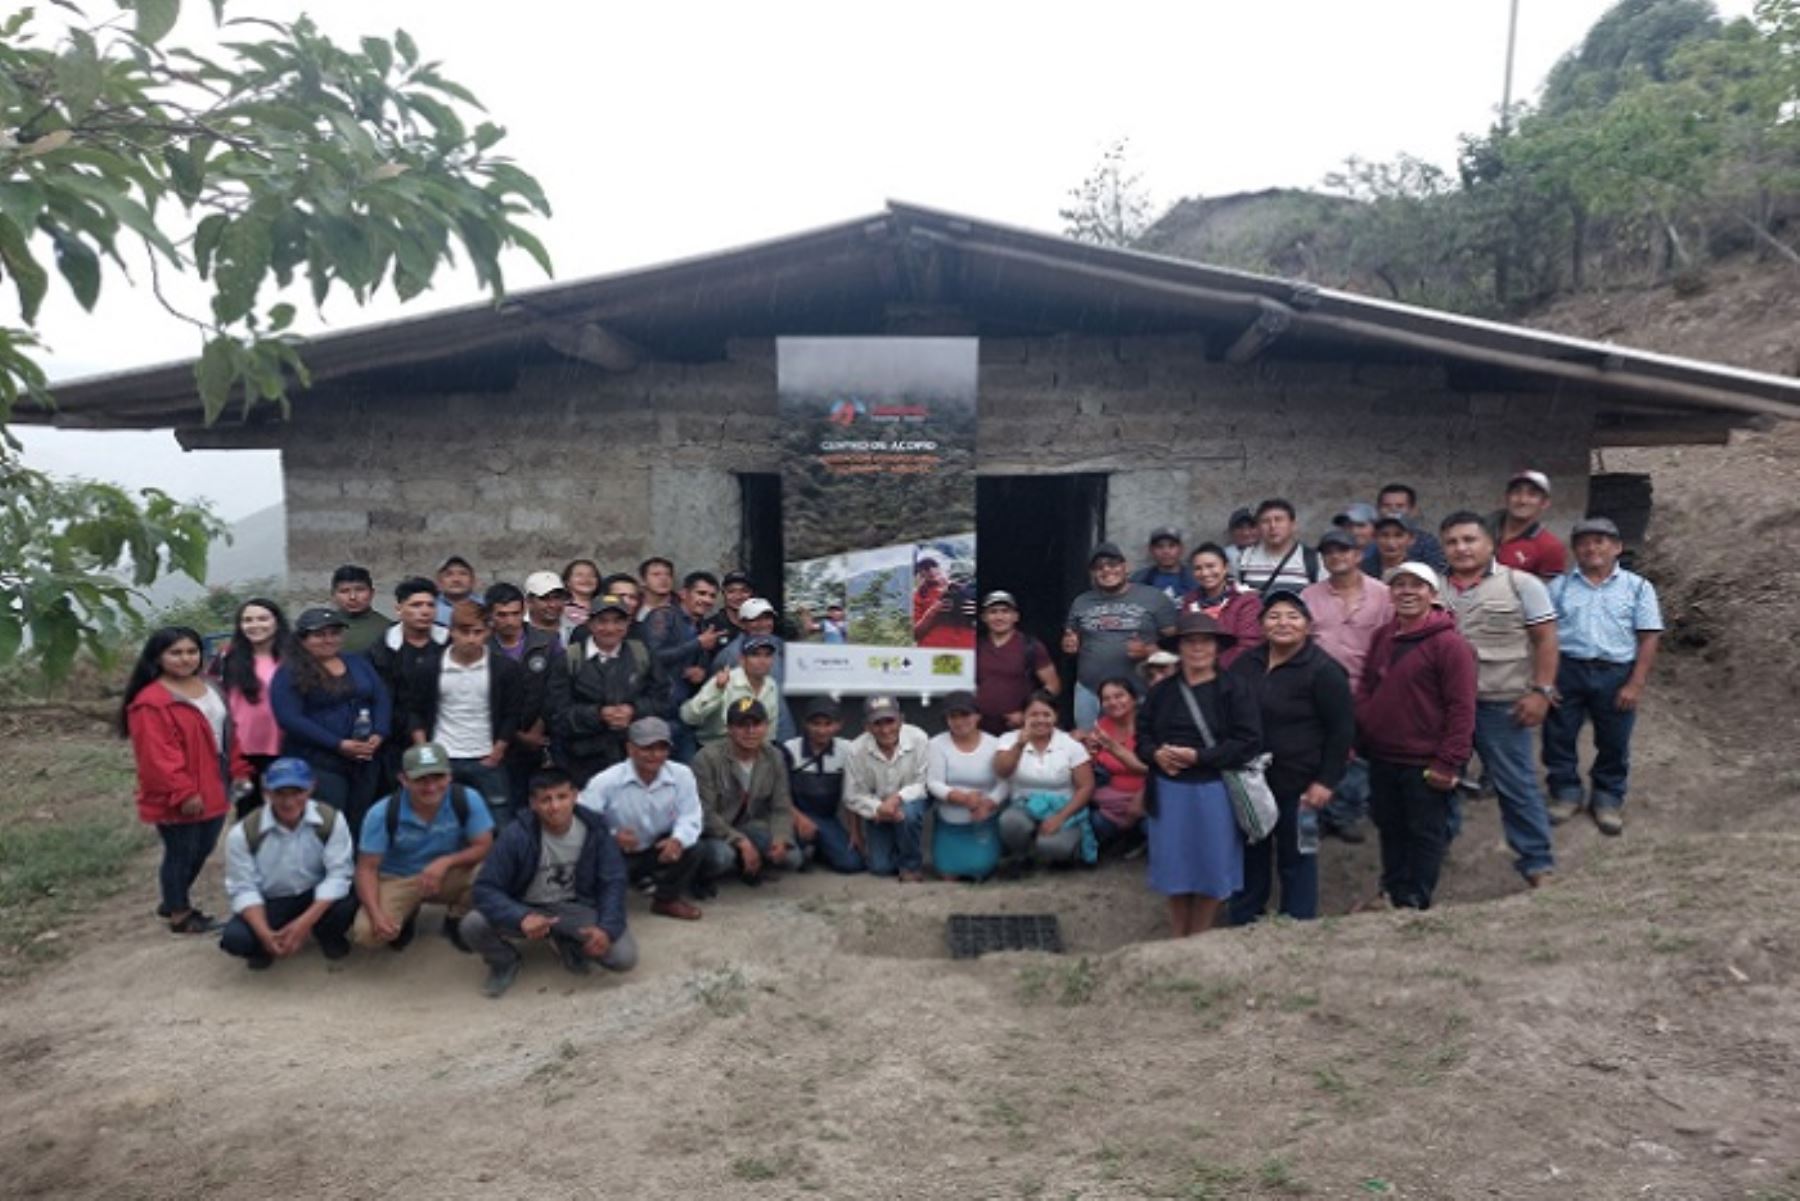 Naturaleza y Cultura Internacional, con sede en Perú y Ecuador, se comprometieron a impulsar la comercialización de la tara en la agenda de trabajo binacional, con el apoyo de los gobiernos provinciales y cantonales.